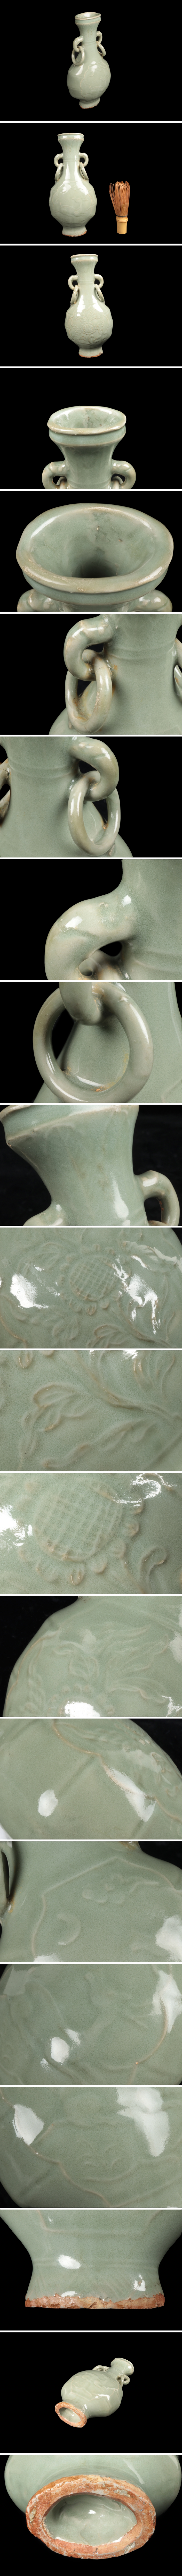 定番品質保証華道具 高麗青磁 双耳 鐶付 花瓶 花入 花器 韓国 時代 骨董品 古美術品 9090tdfz 高麗